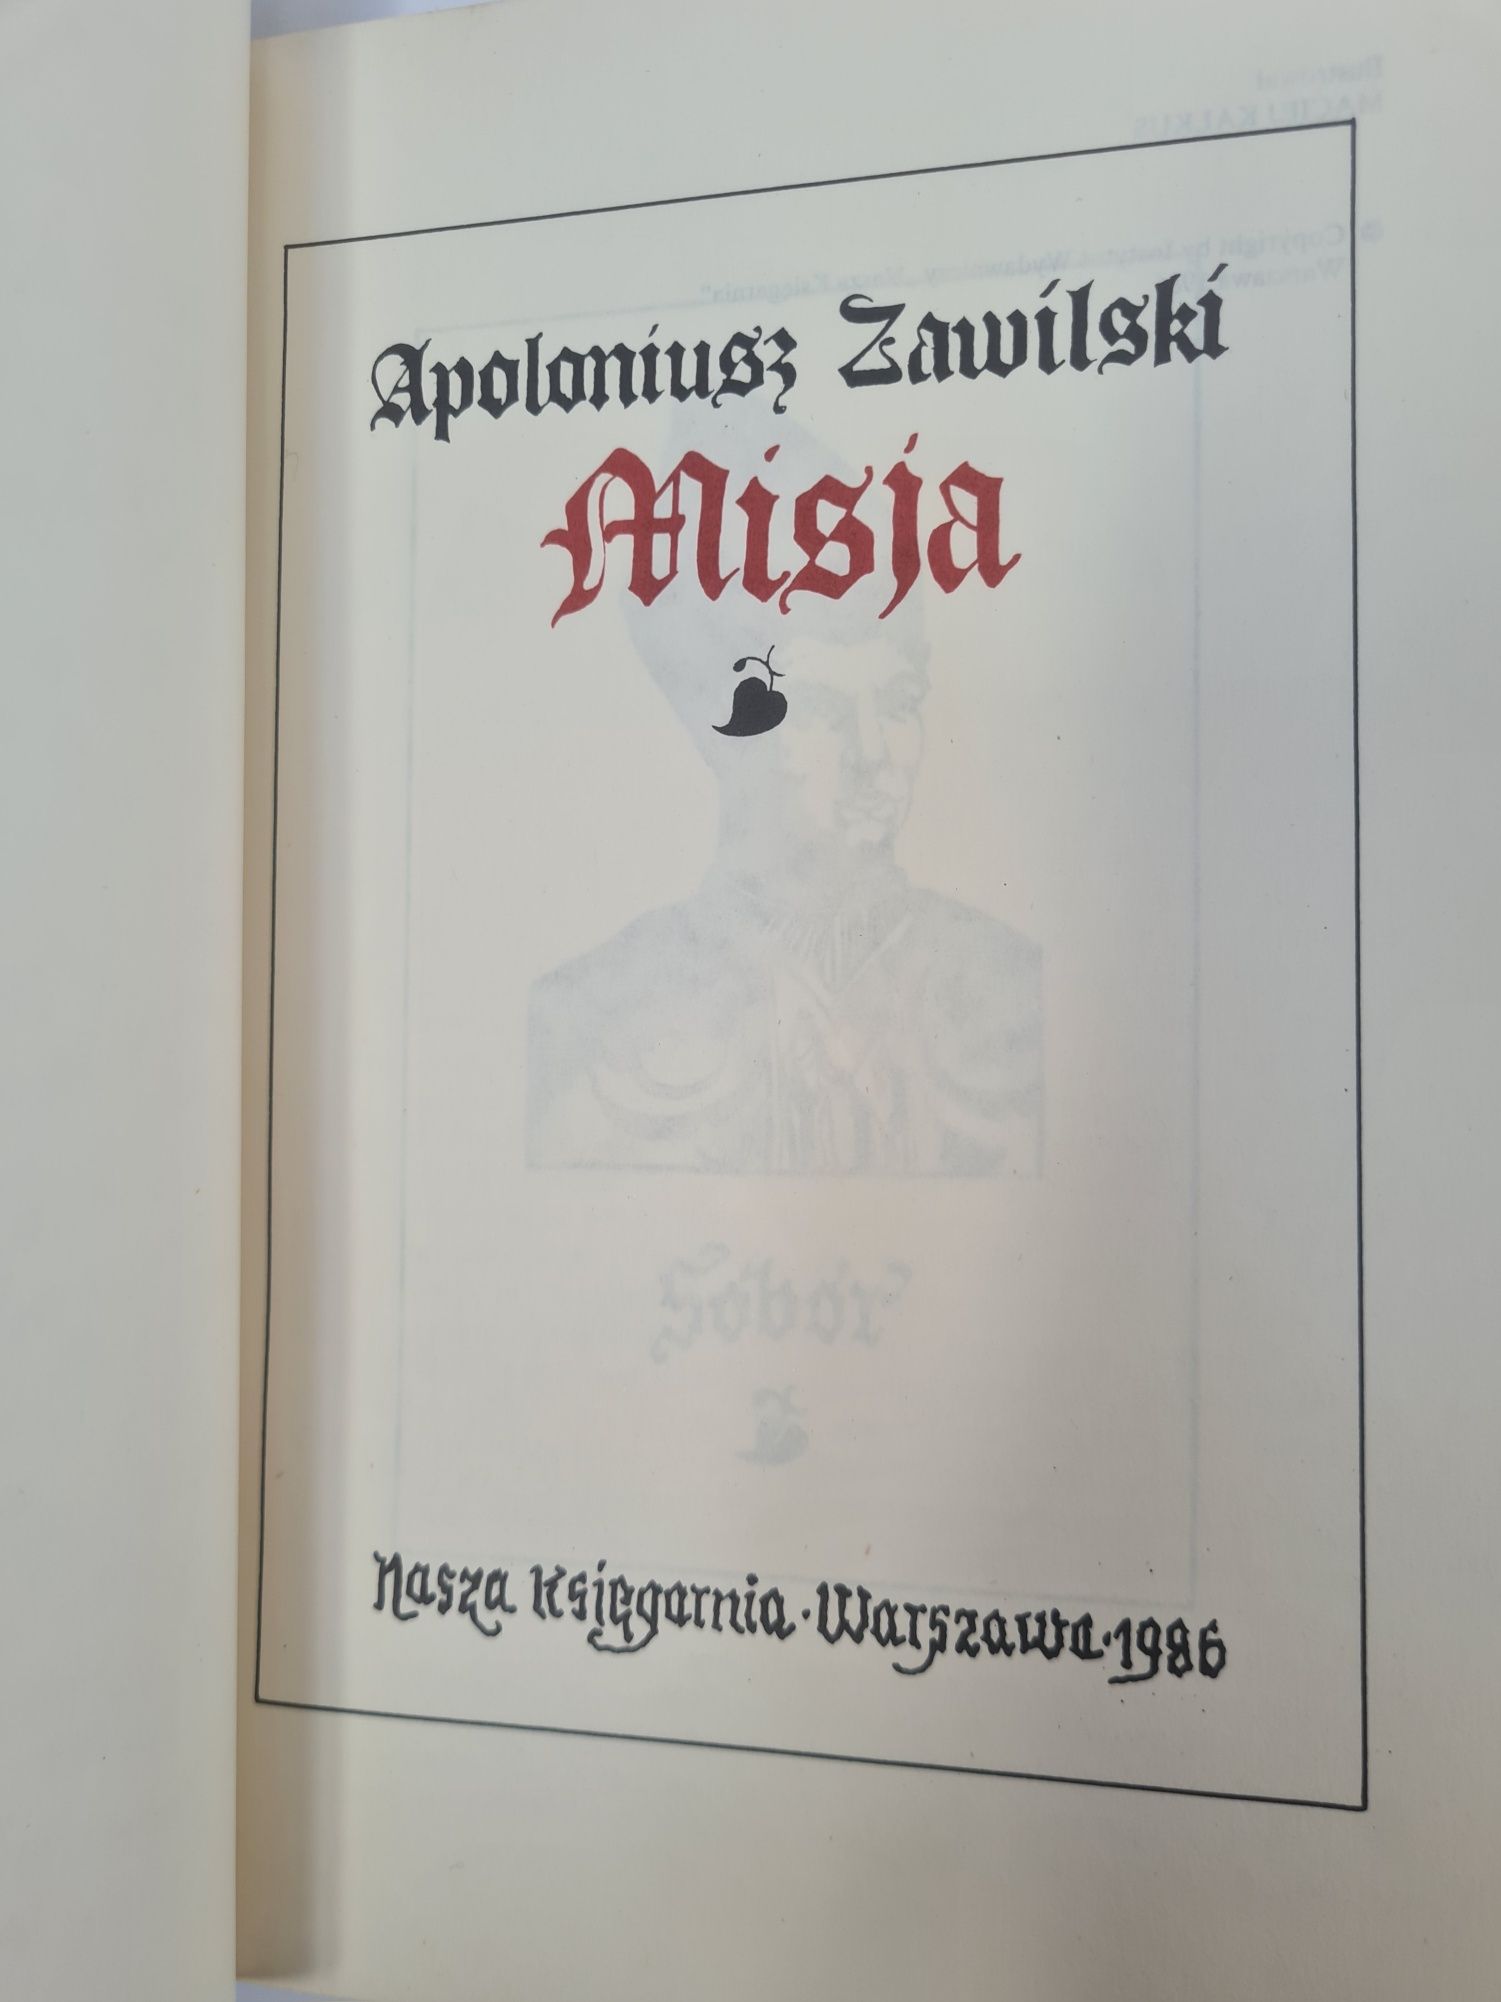 Misja - Apoloniusz Zawilski